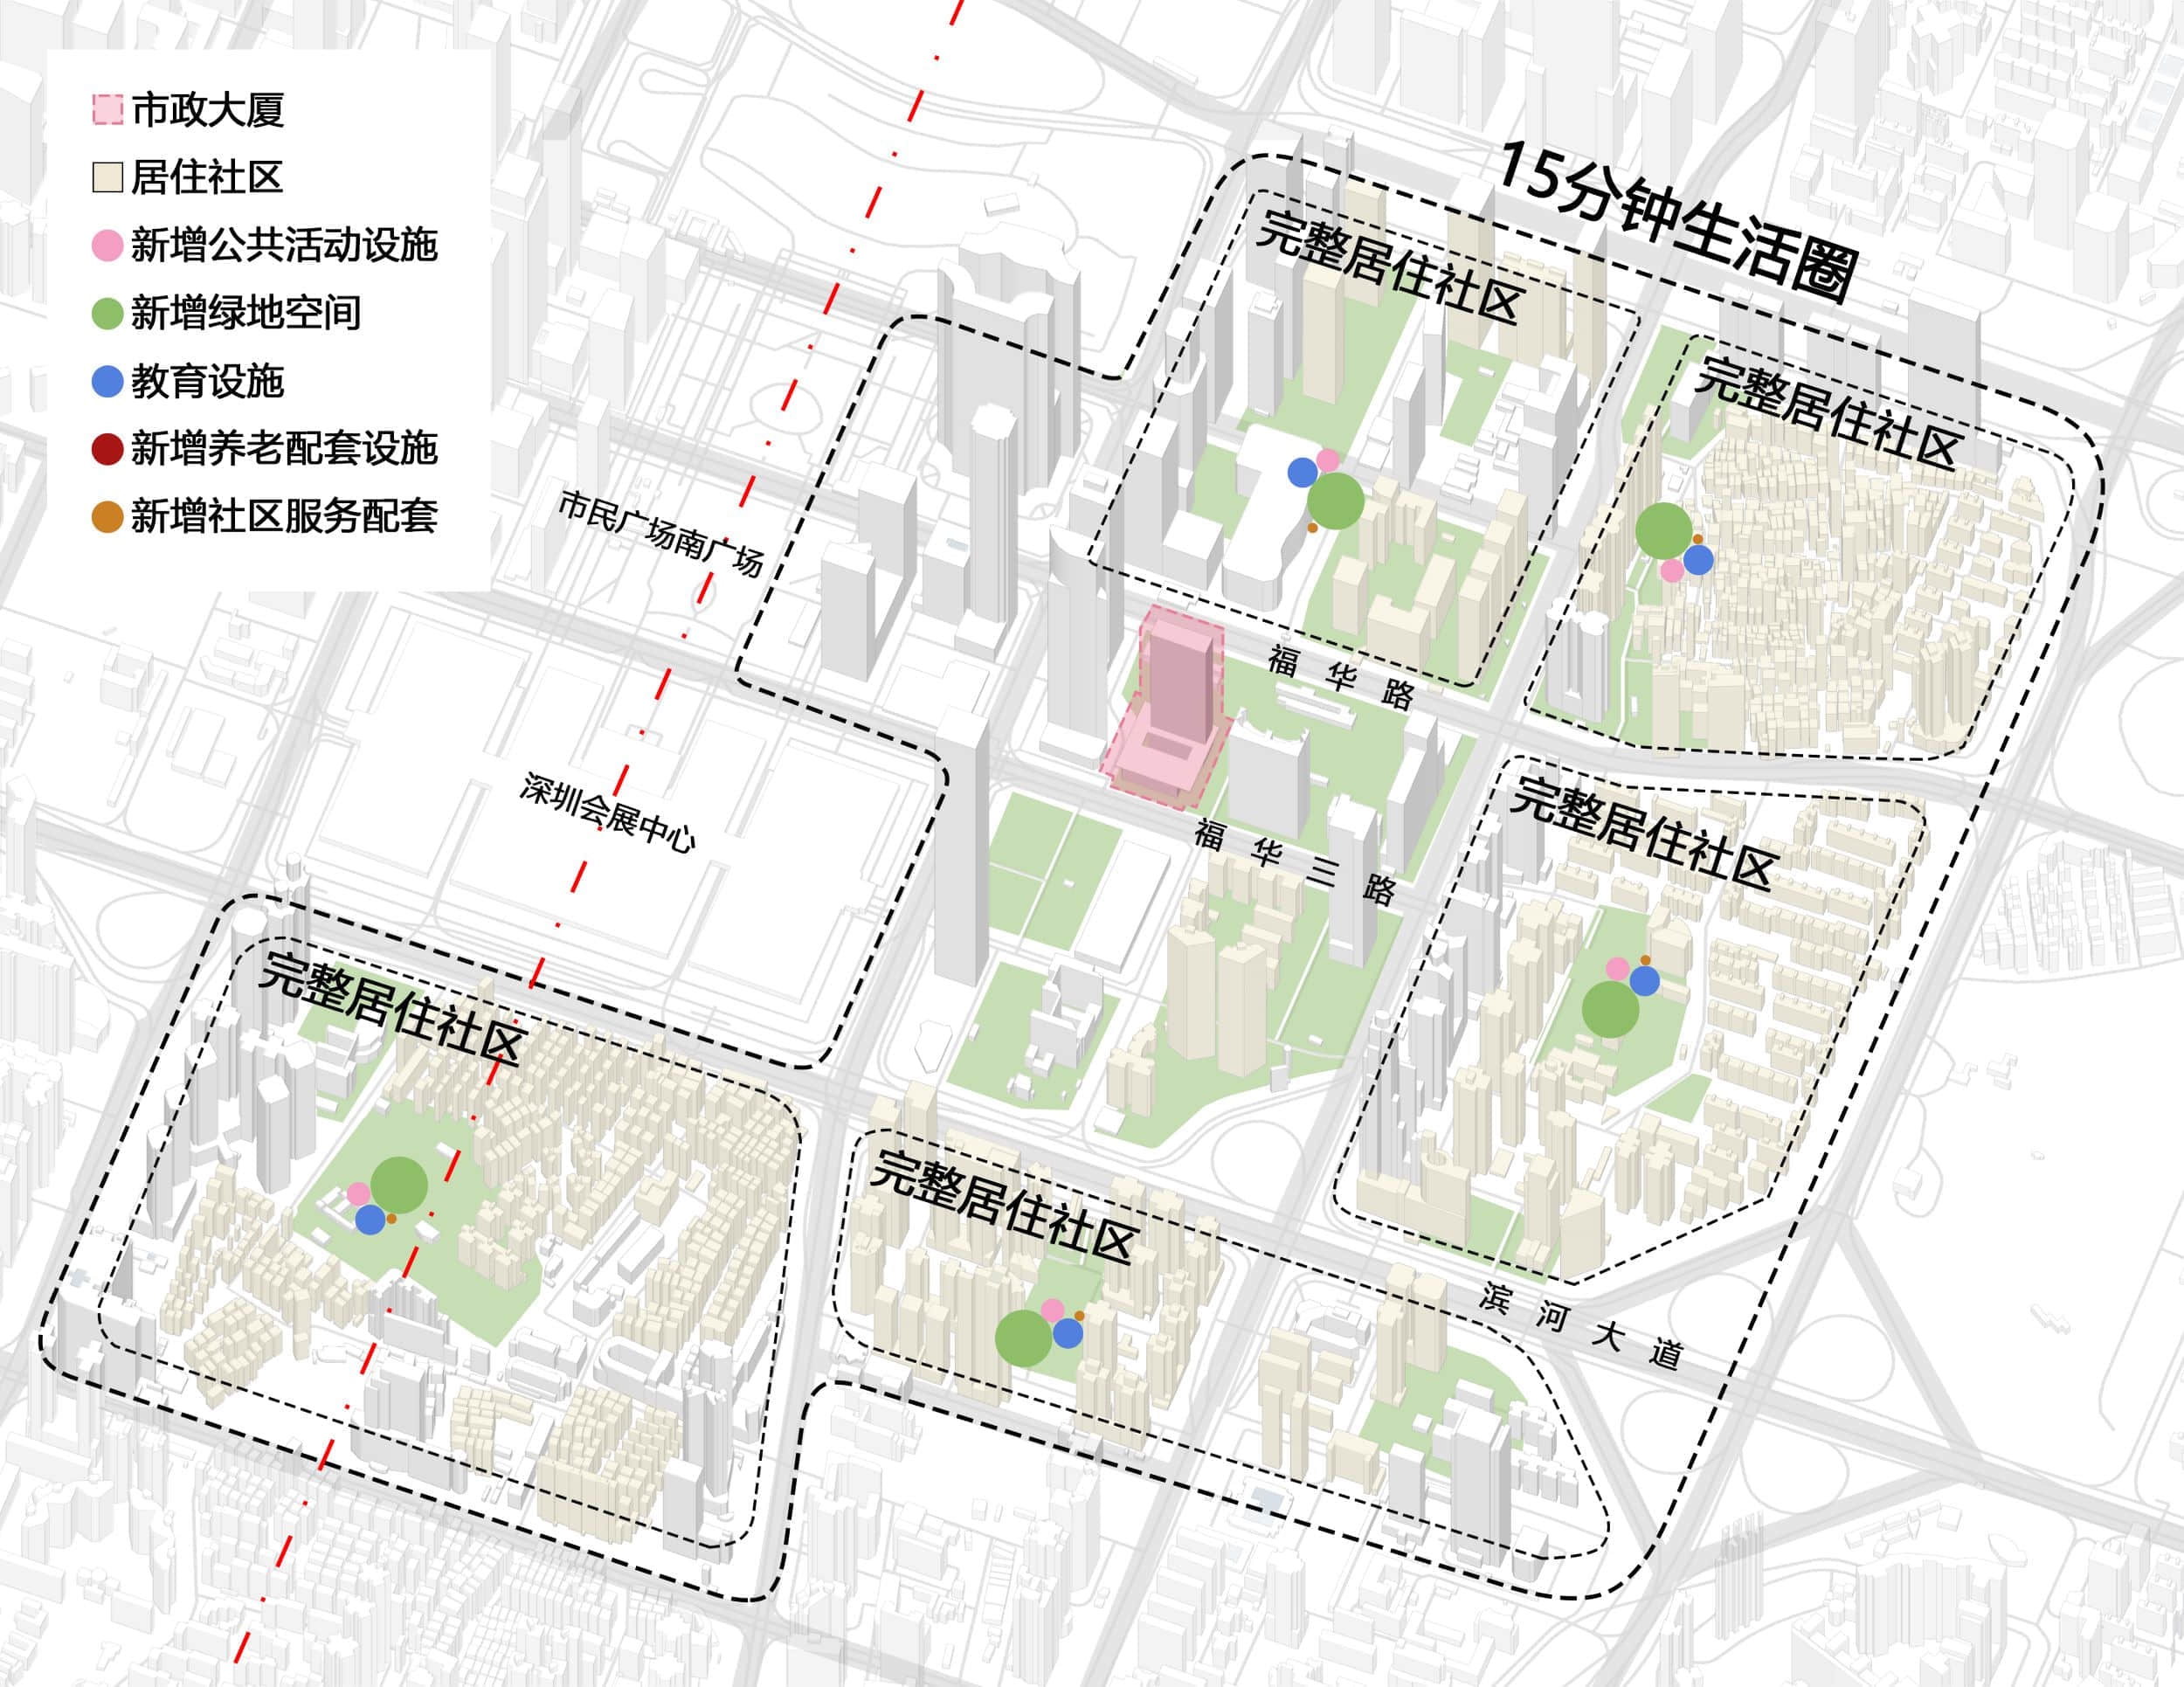 福田市中心区一个“15分钟生活圈”中，公共服务大部分集中在核心“市政大厦”中的示意图 ©朱涛建筑